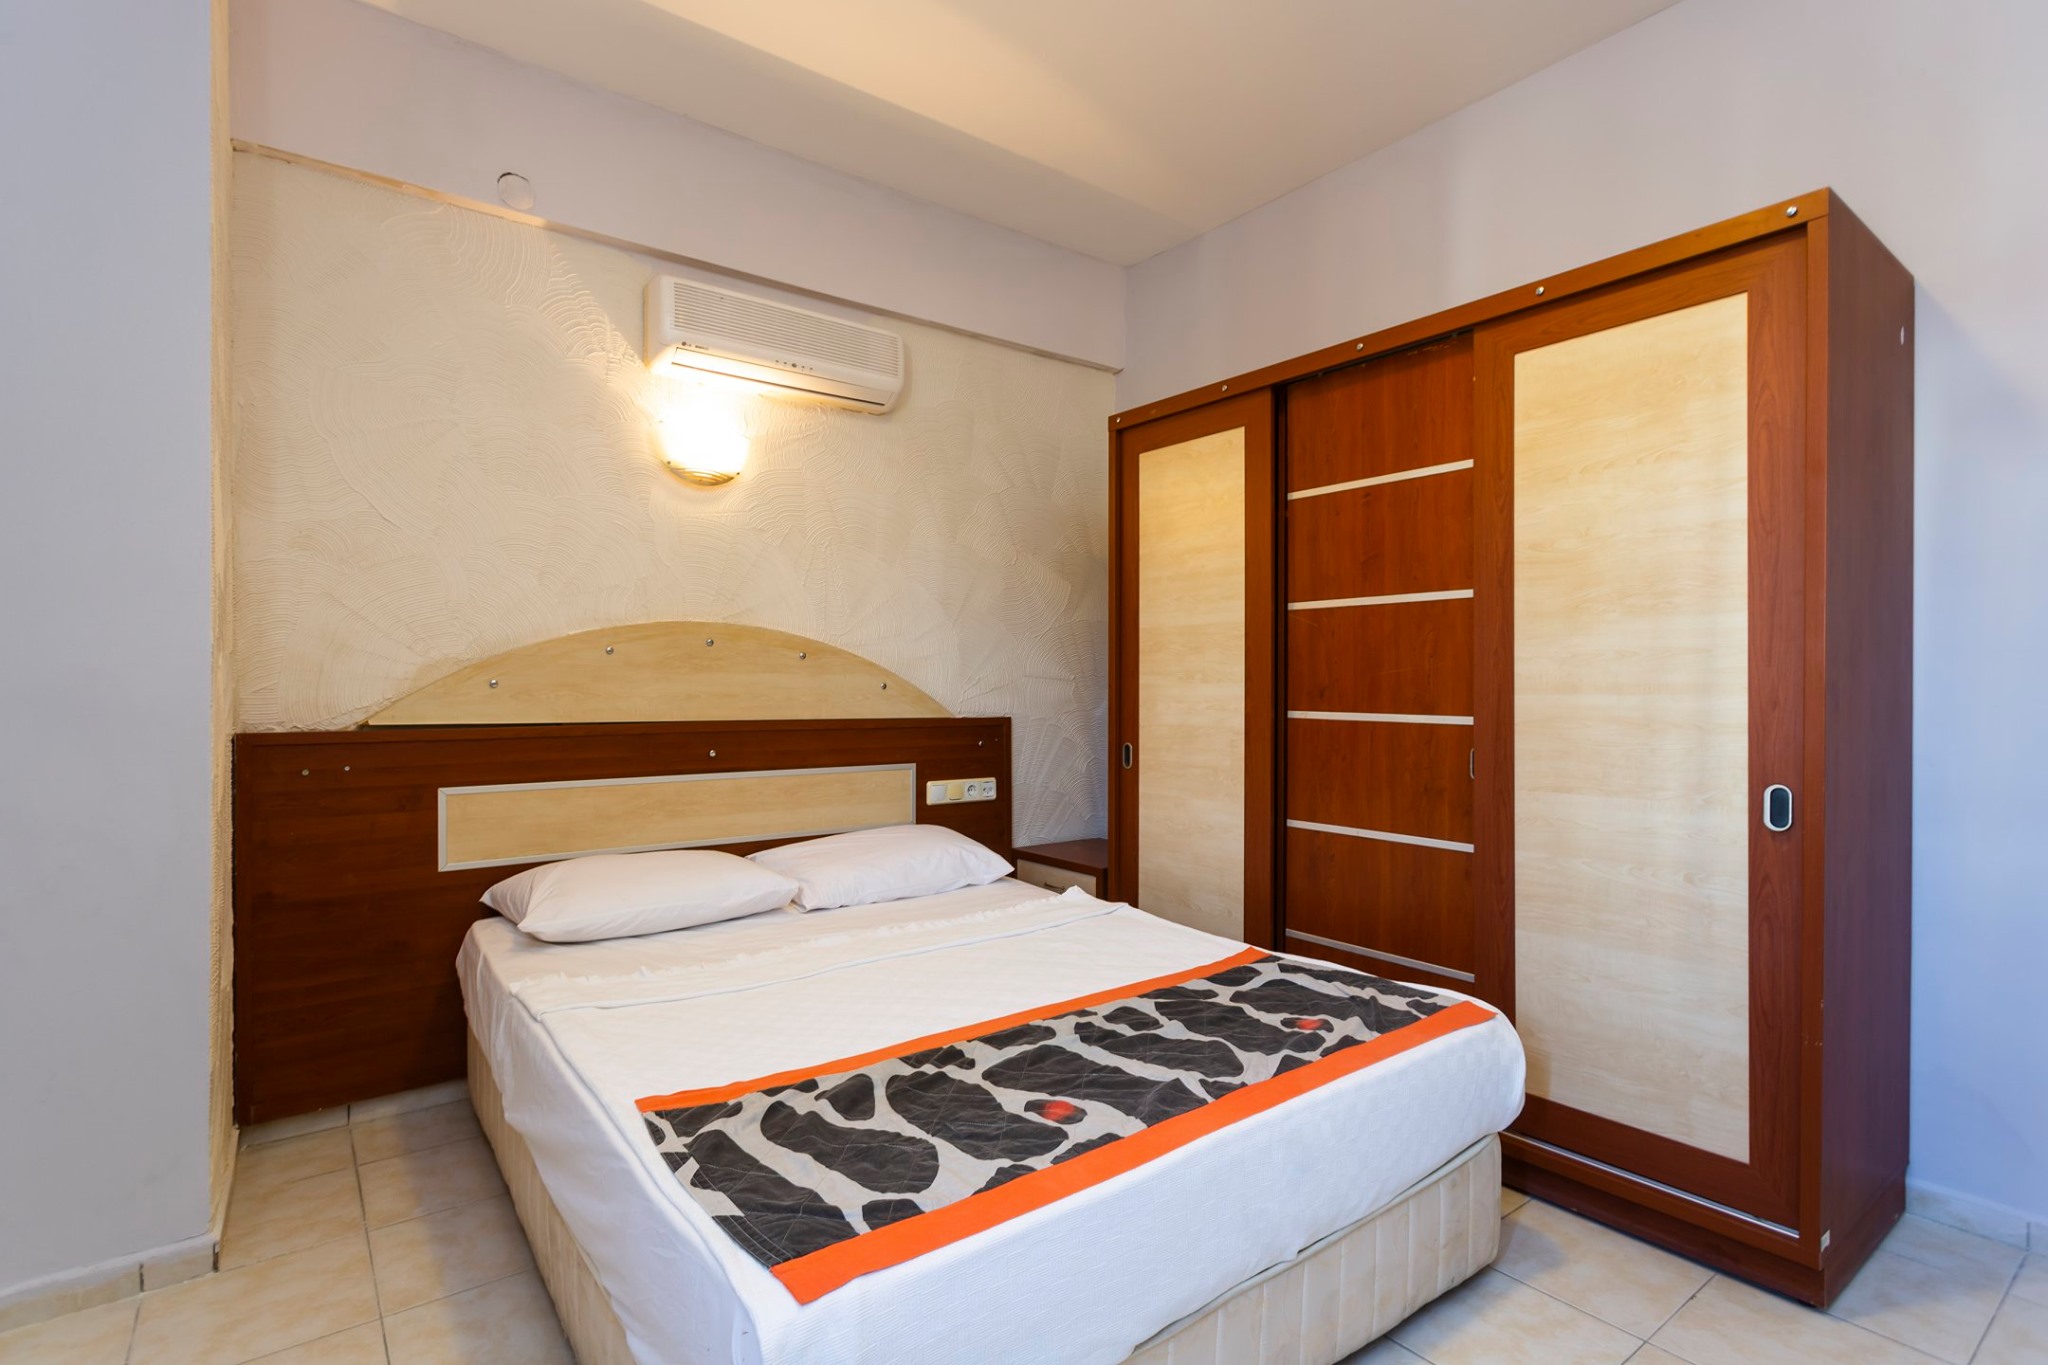 Letovanje Turska autobusom, Bodrum, Hotel Tiana Moonlight,izgled sobe